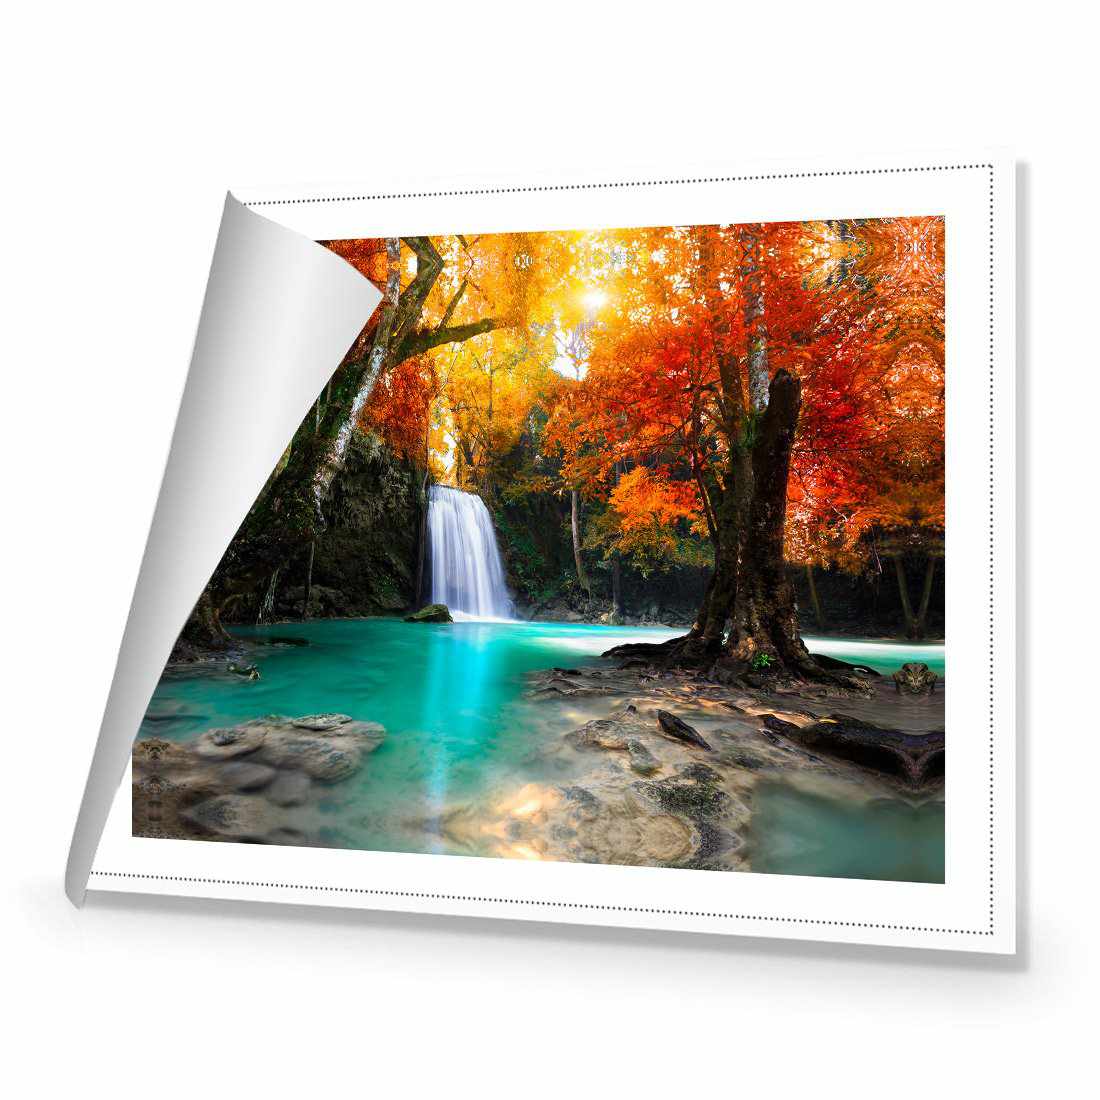 Autumn Waterfall Magic Canvas Art-Canvas-Wall Art Designs-45x30cm-Rolled Canvas-Wall Art Designs